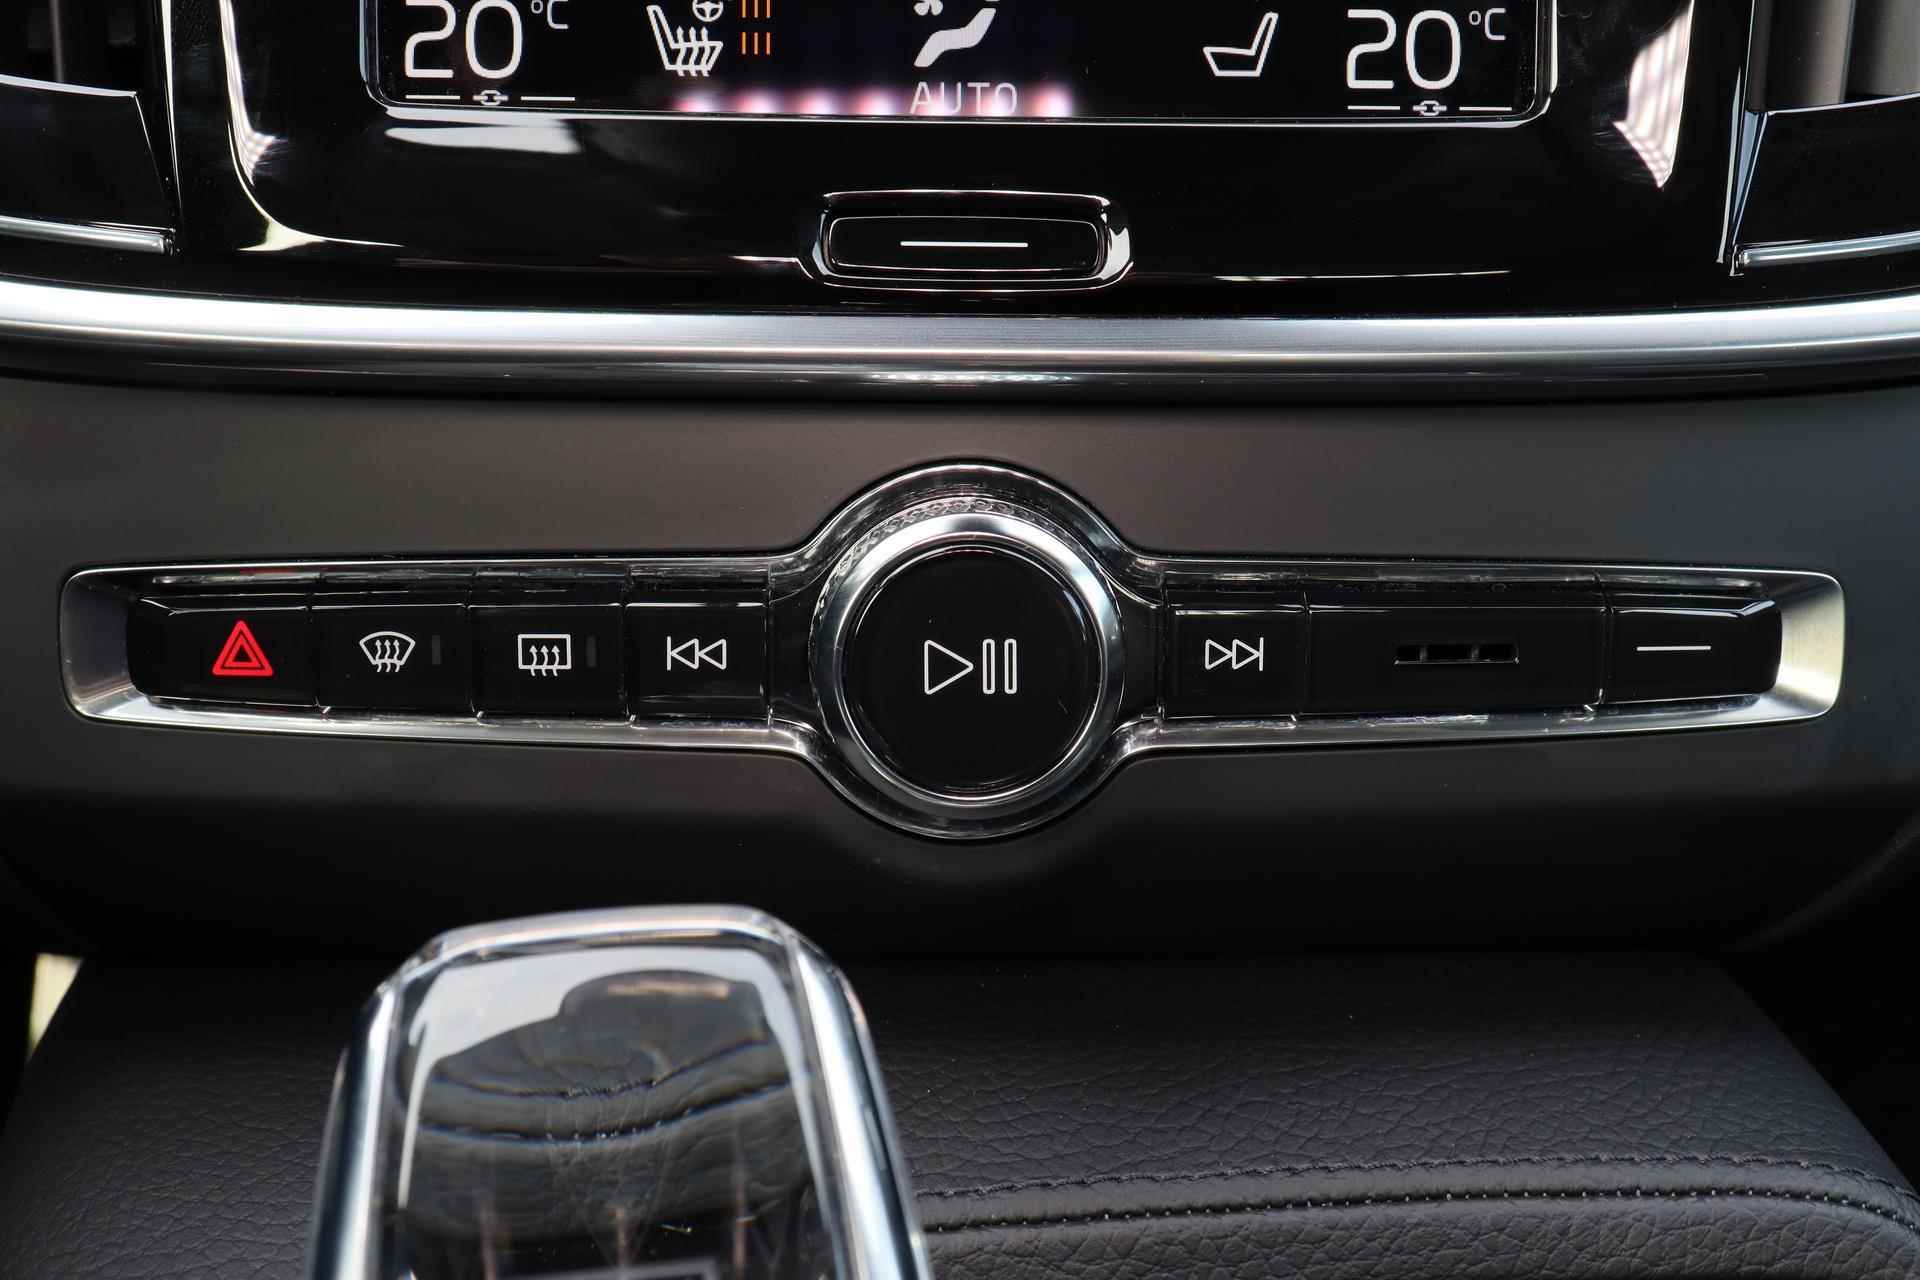 Volvo S90 T8 AWD Inscription - IntelliSafe Assist & Surround - 360º Camera - Harman/Kardon audio - Adaptieve LED koplampen - Verwarmde voorstoelen, stuur & achterbank - Parkeersensoren voor & achter - Elektr. bedienb. voorstoelen met geheugen - Standkachel - 19' LMV - 11/26